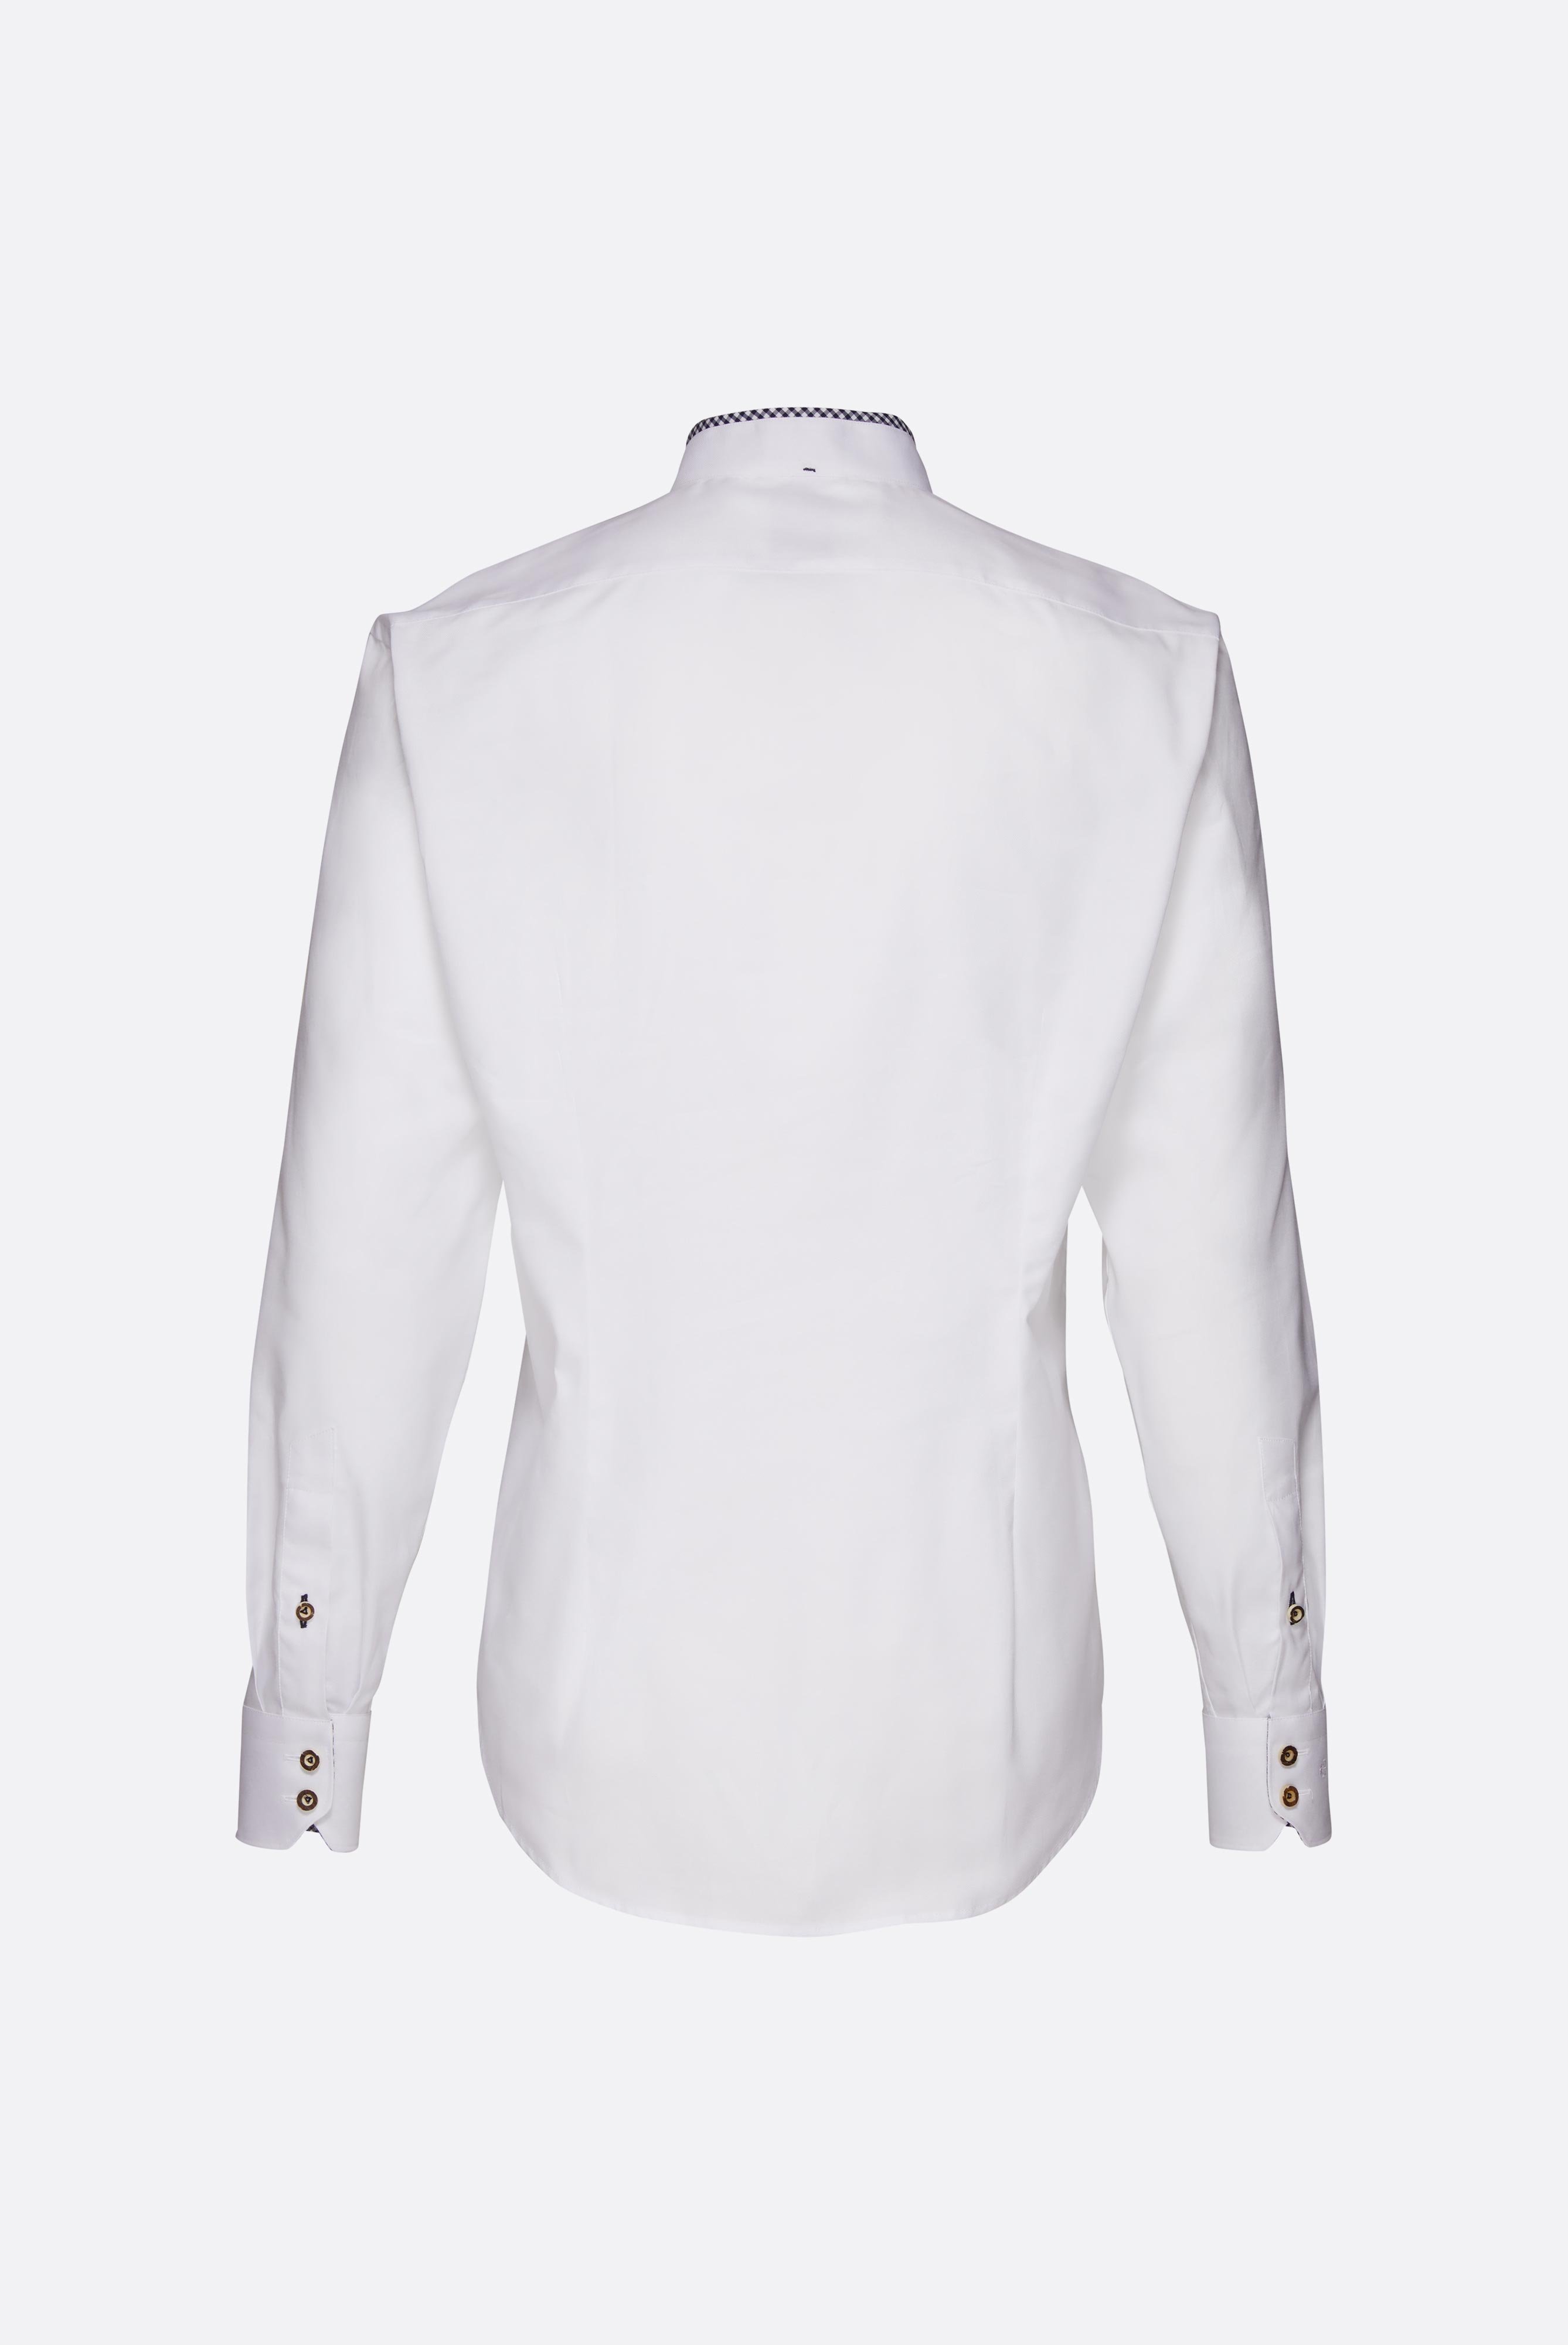 Festliche Hemden+Oxford Trachtenhemd mit Farbdetail Tailor Fit+20.2081.8Q.150251.007.38